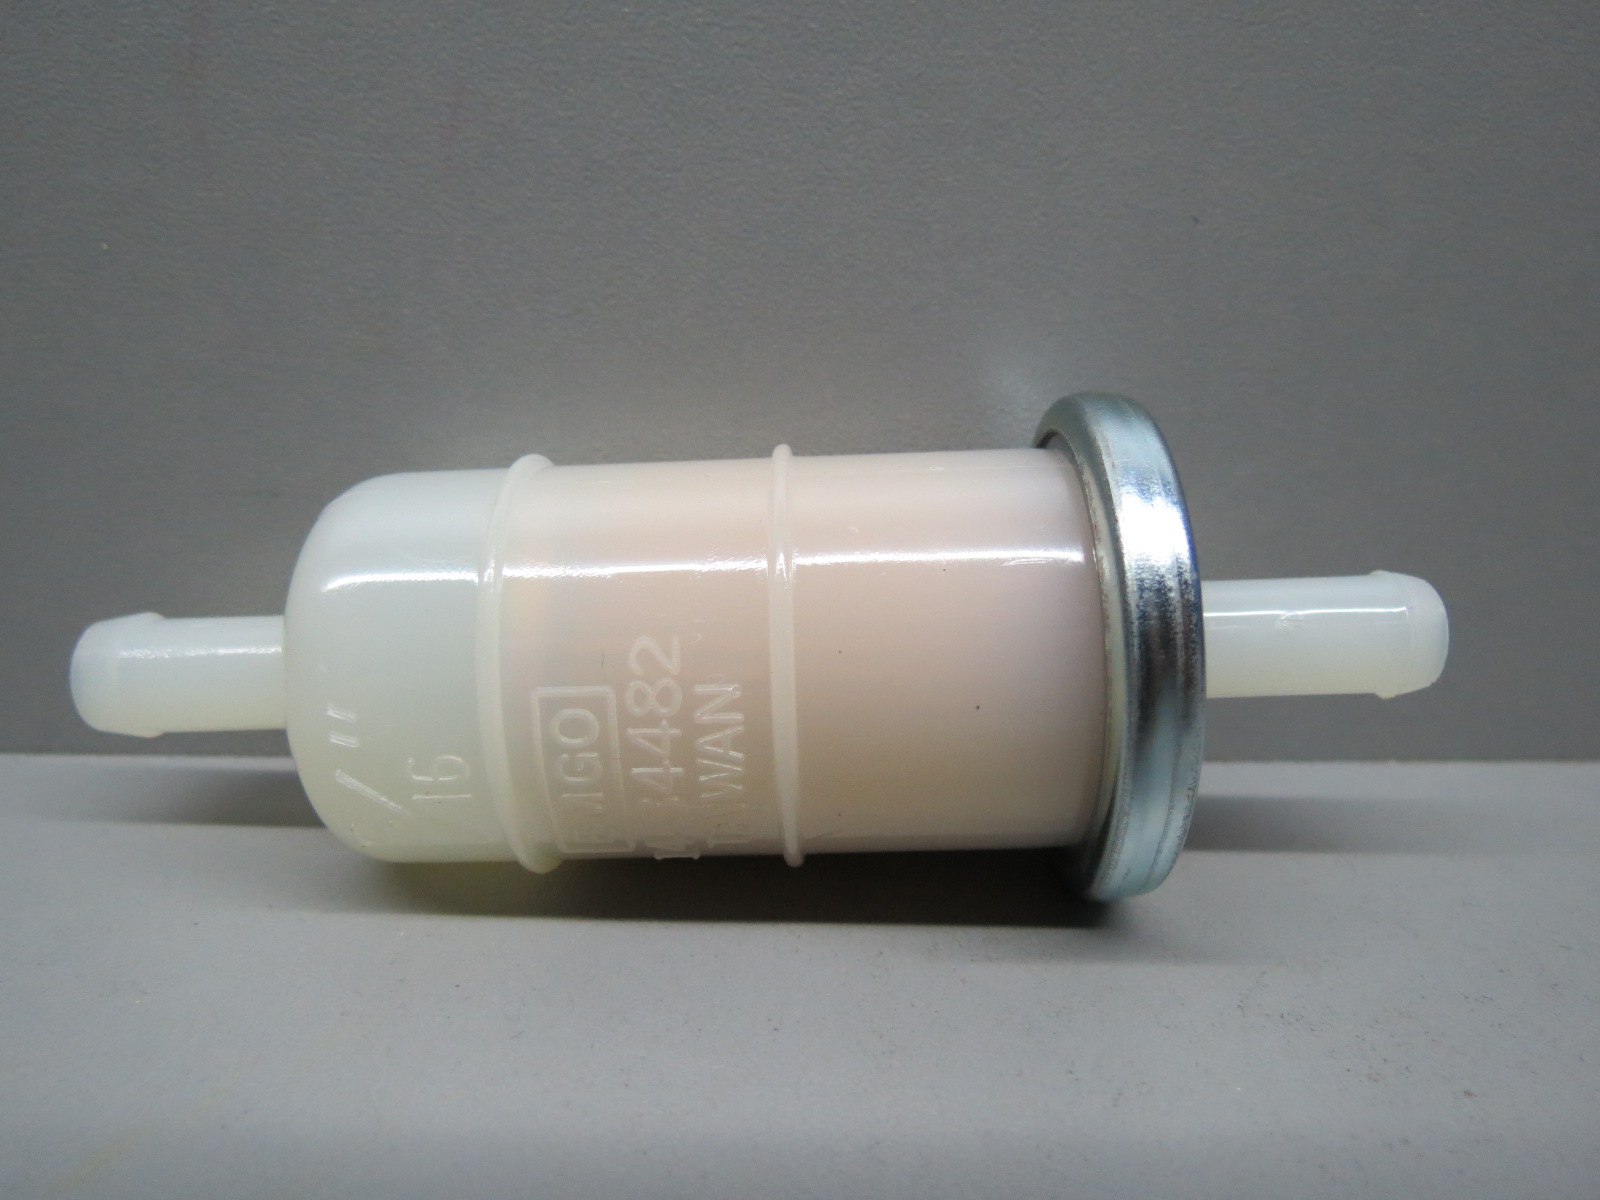 Продажа Топливный фильтр EMGO 99-34480A  HONDA 16900-371-004 (3/ 16”) 6mm